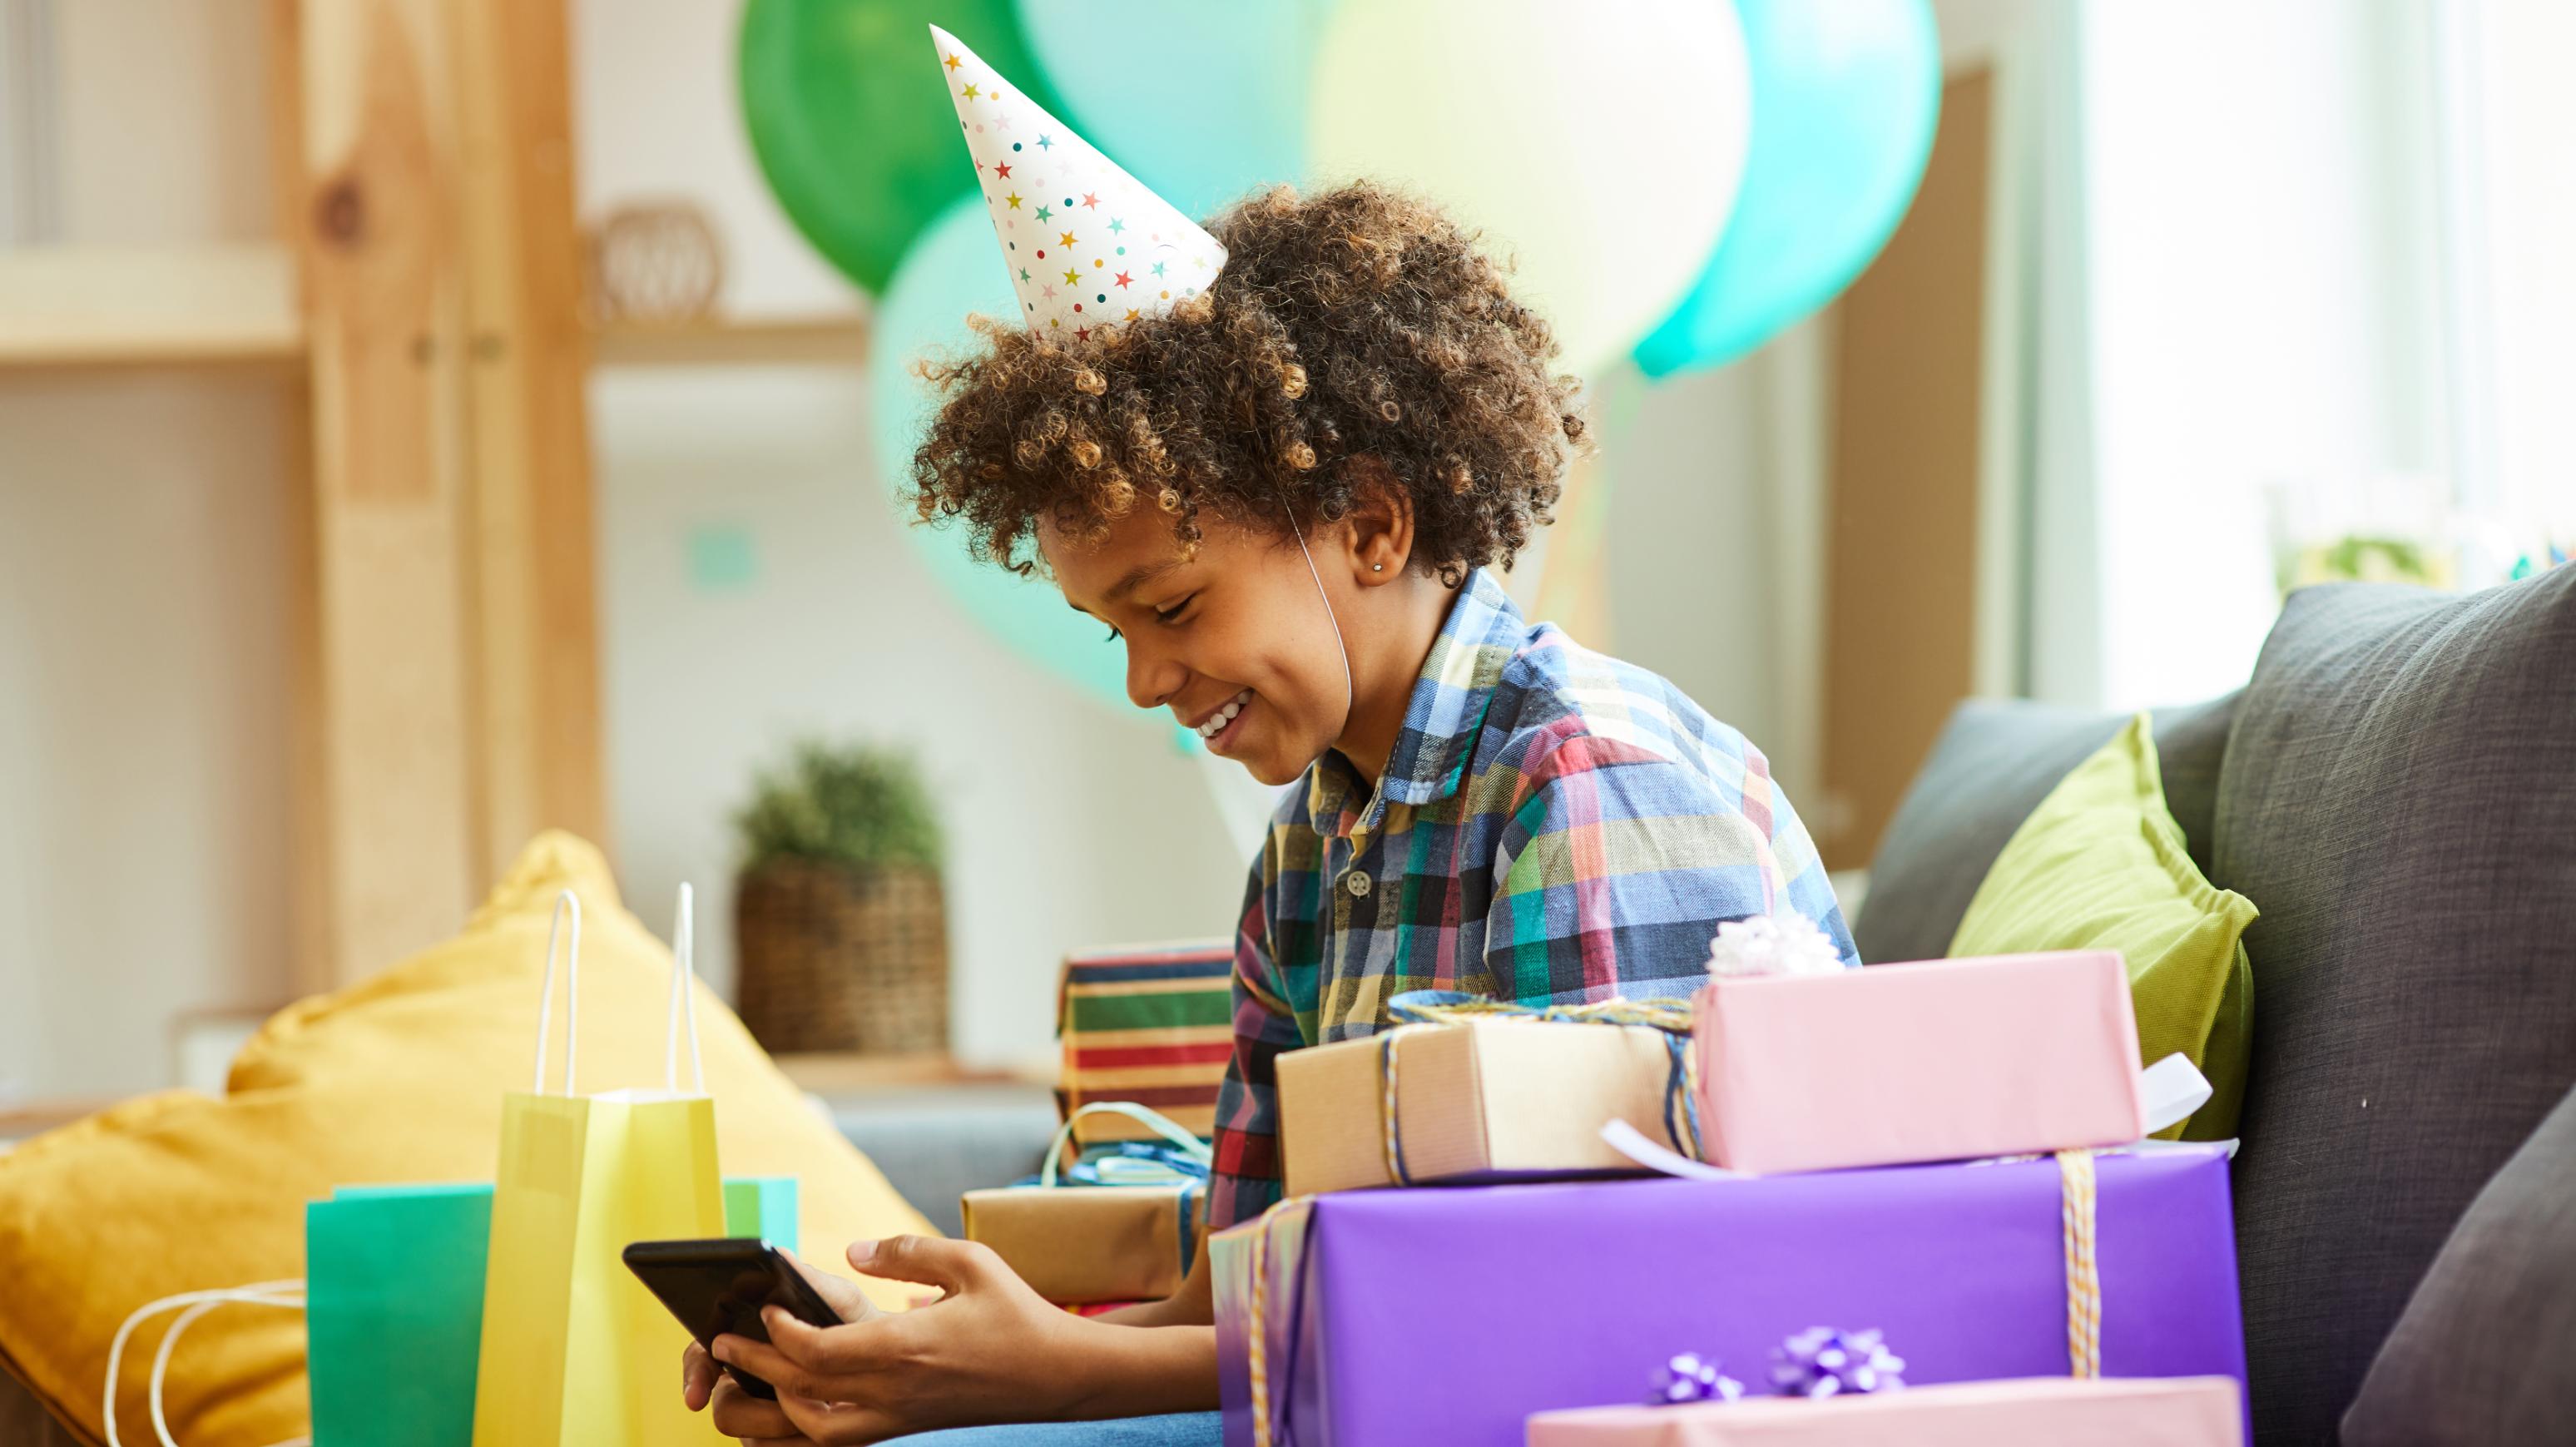 15 planes para celebrar el día de tu cumpleaños